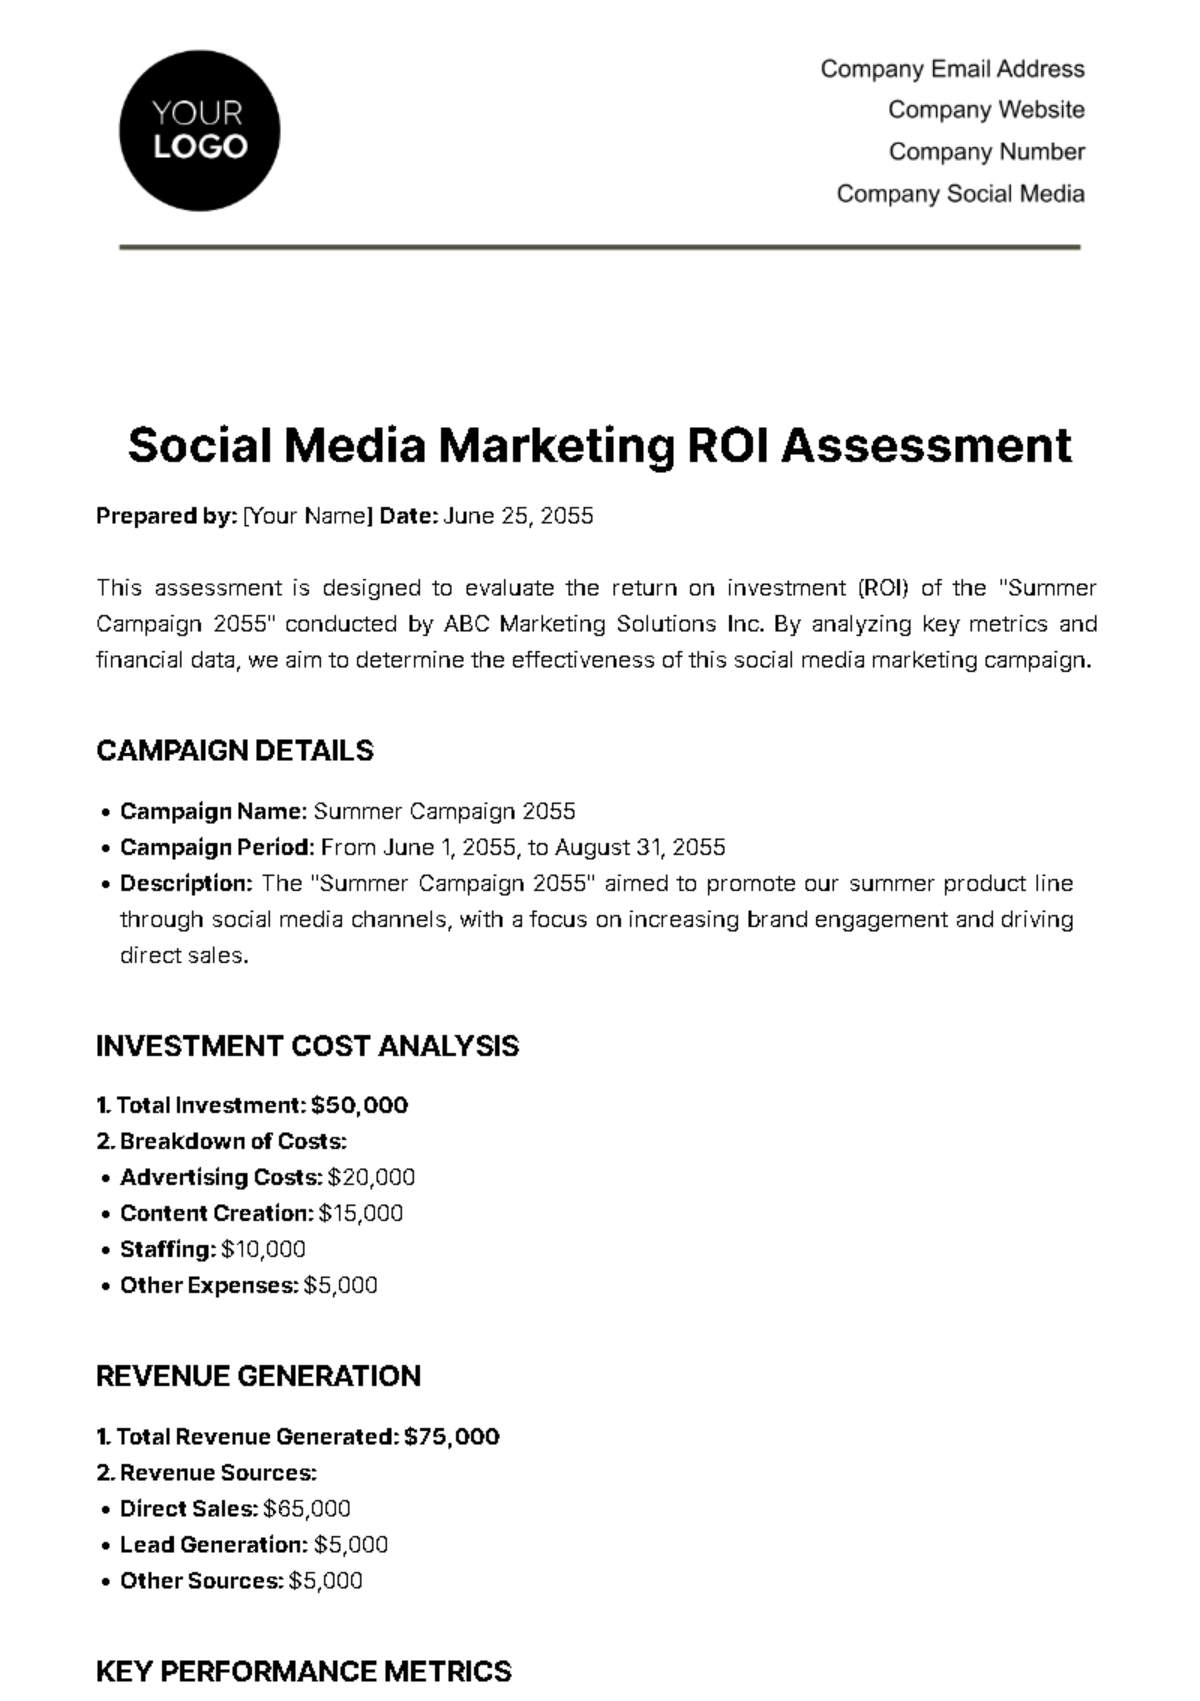 Social Media Marketing ROI Assessment Template